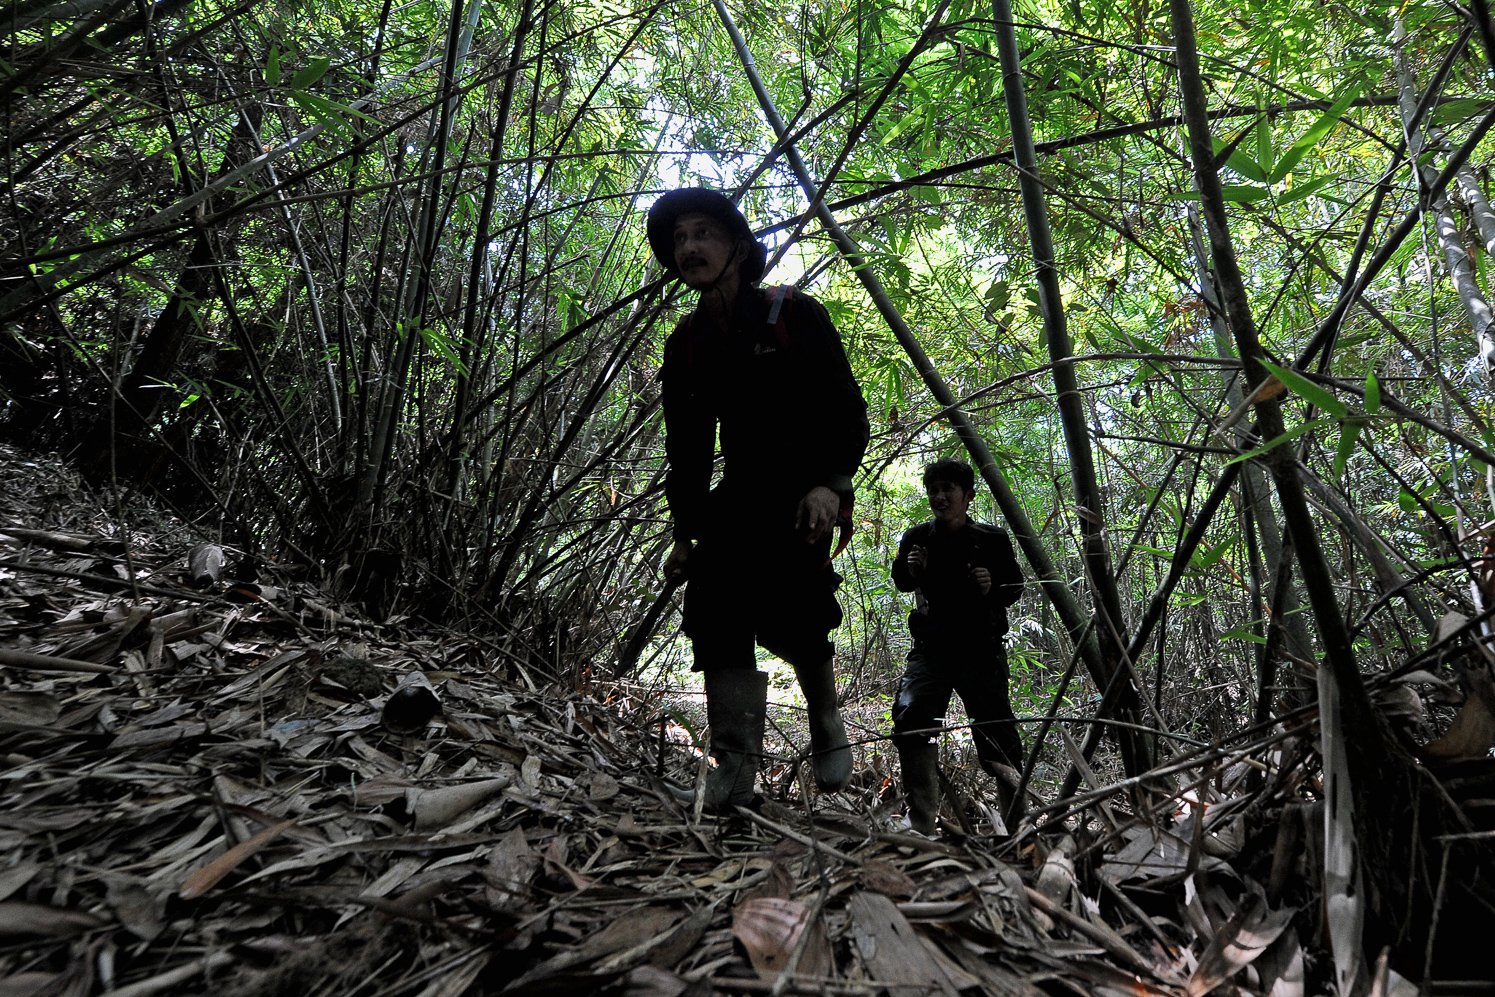 Januardi (kiri) dan Seleksa (kanan) melewati hutan bambu saat pemonitoran gajah di Musi Banyuasin, Sumatera Selatan.